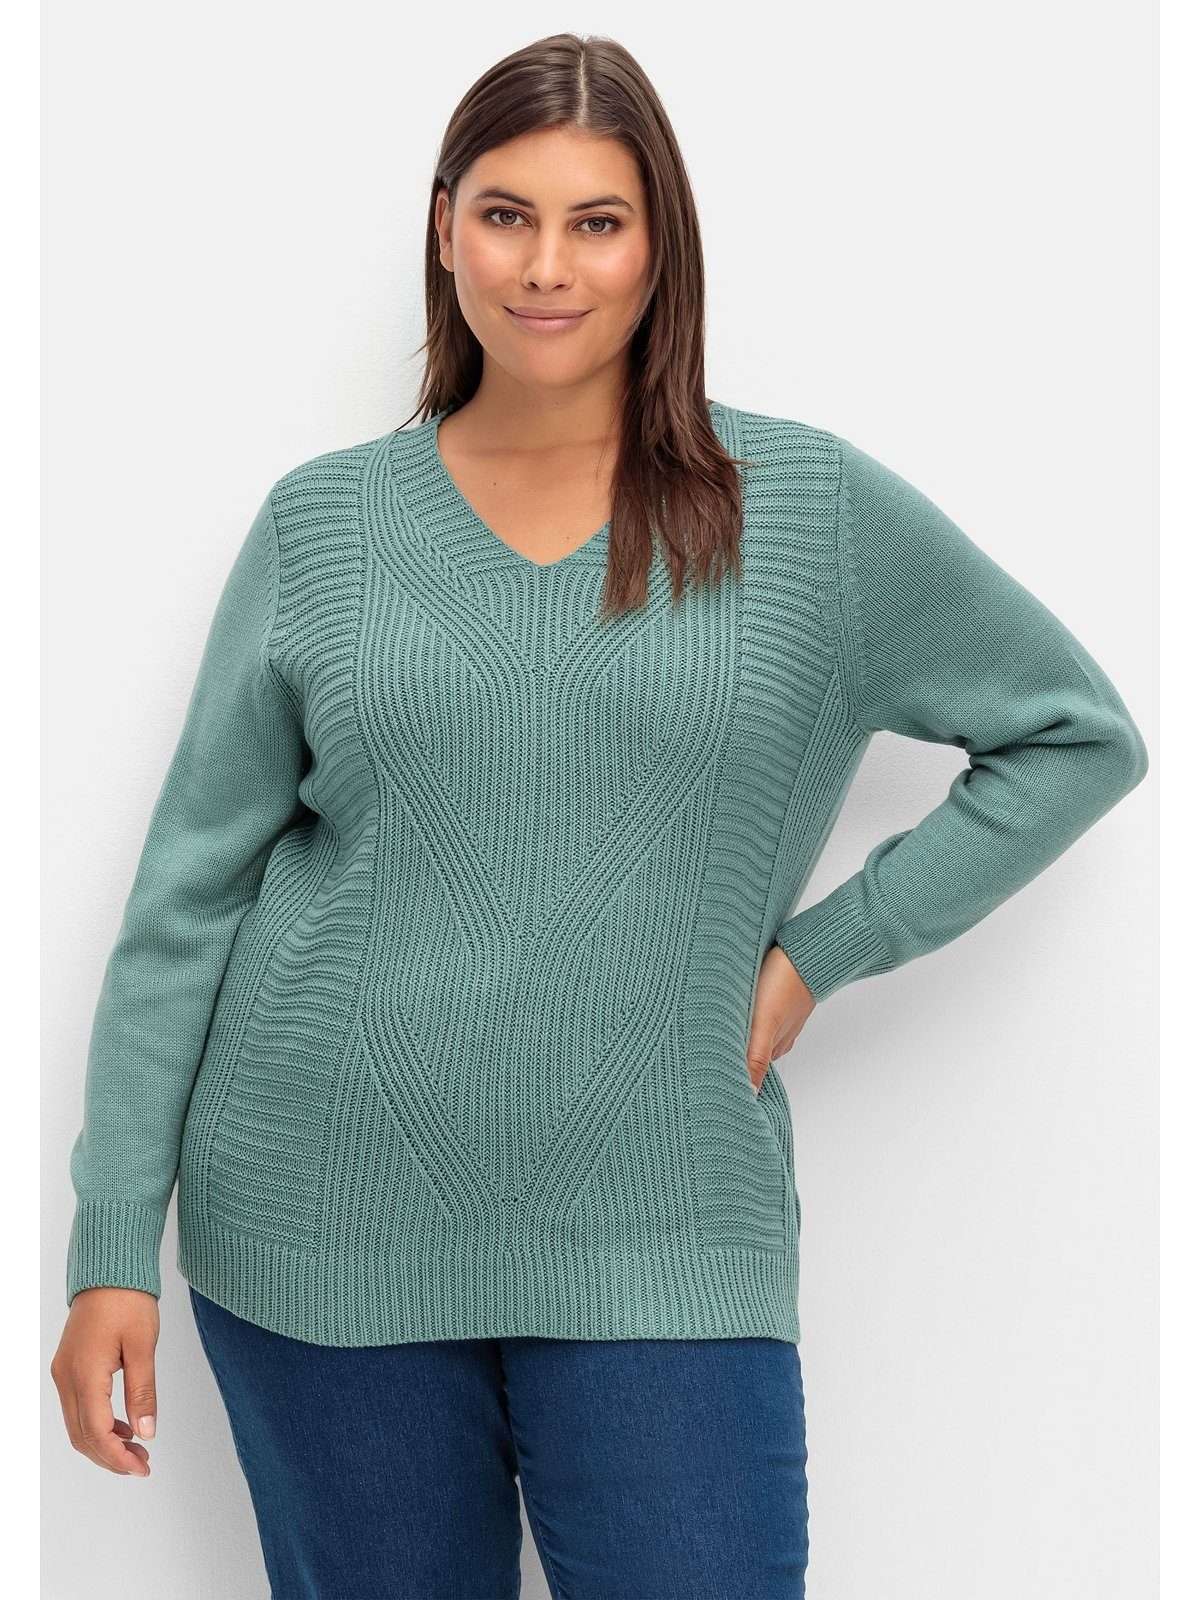 Вязаный свитер больших размеров с узором косой вязки спереди.